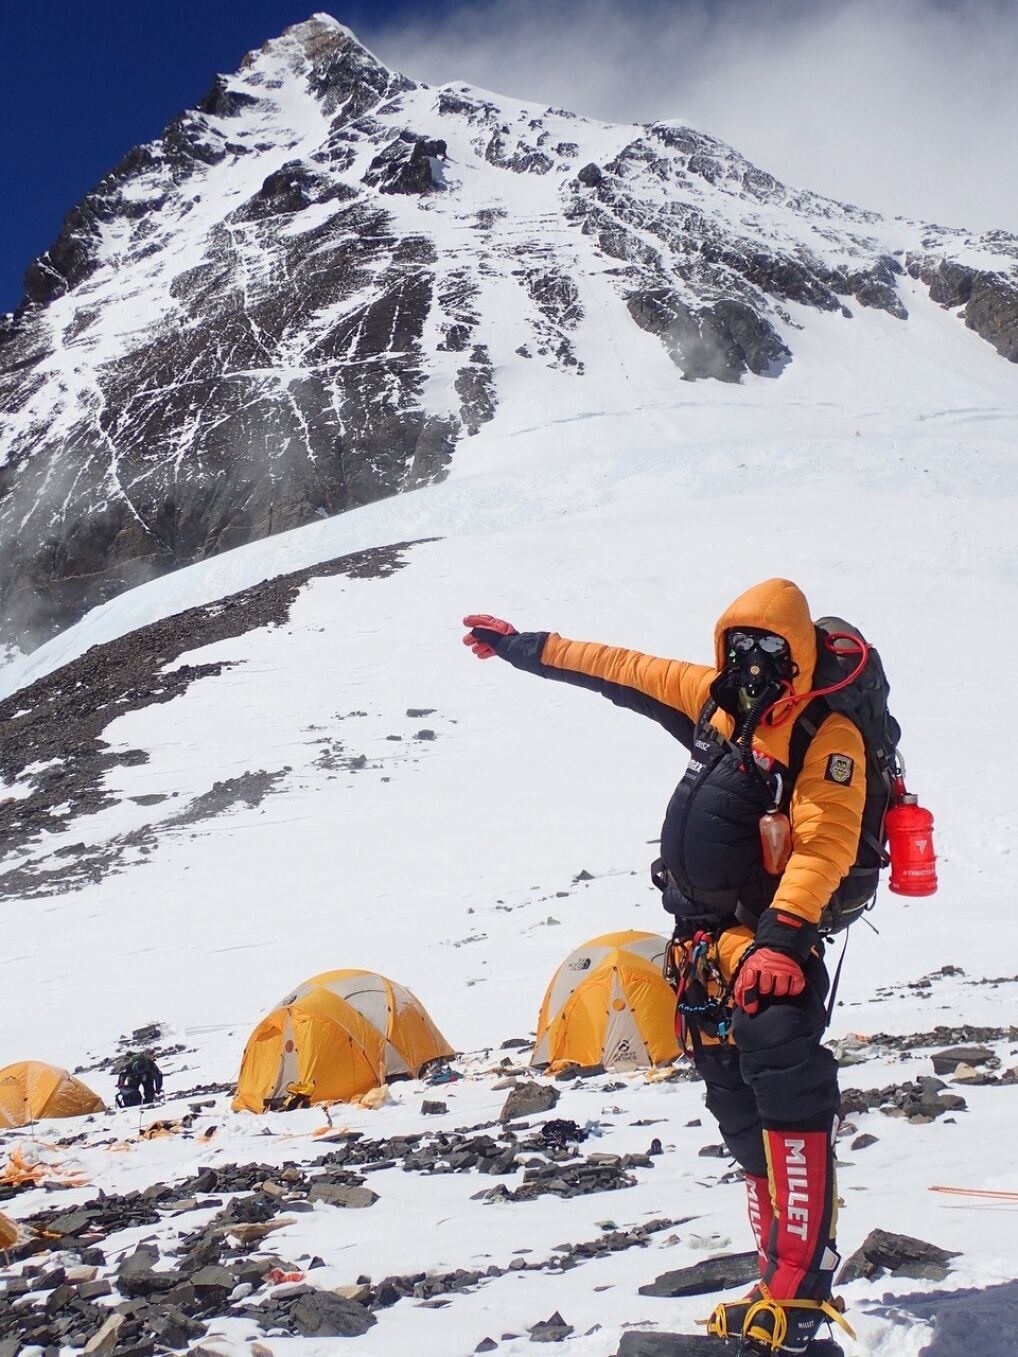 Tlumy Na Mount Everest Strefa Spelnienia Kradziezy I Smierci Tomasz Wisniowski Magazyn Tvn24